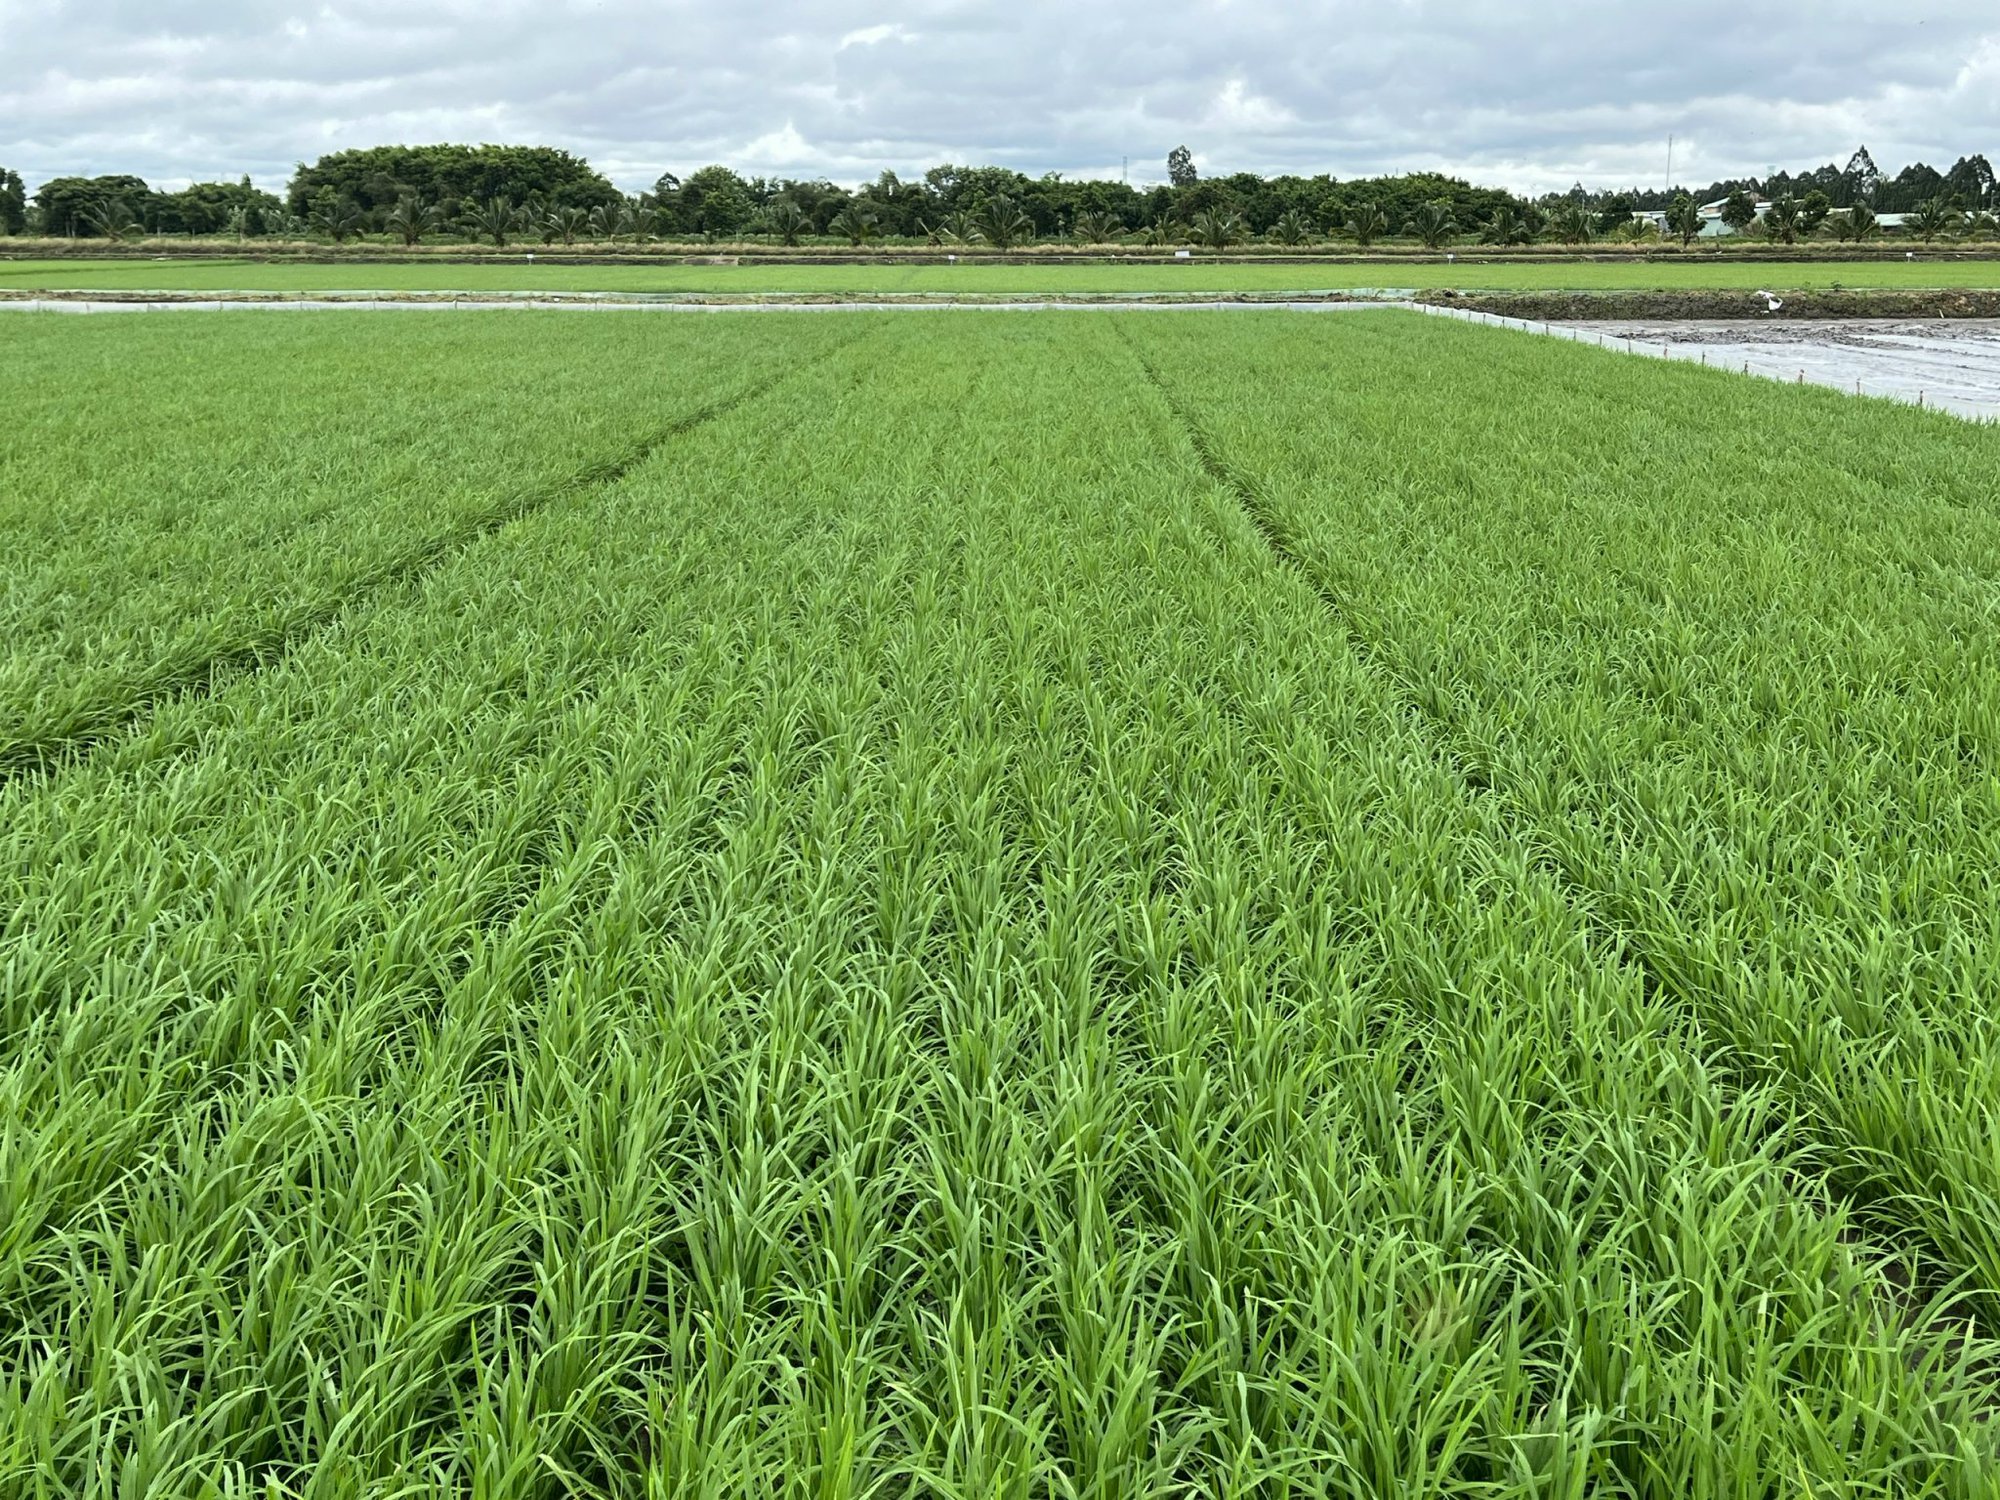 Ứng dụng máy sạ cụm trong giảm giống gieo sạ trên cây lúa tại Đồng bằng Sông Cửu Long - Ảnh 3.